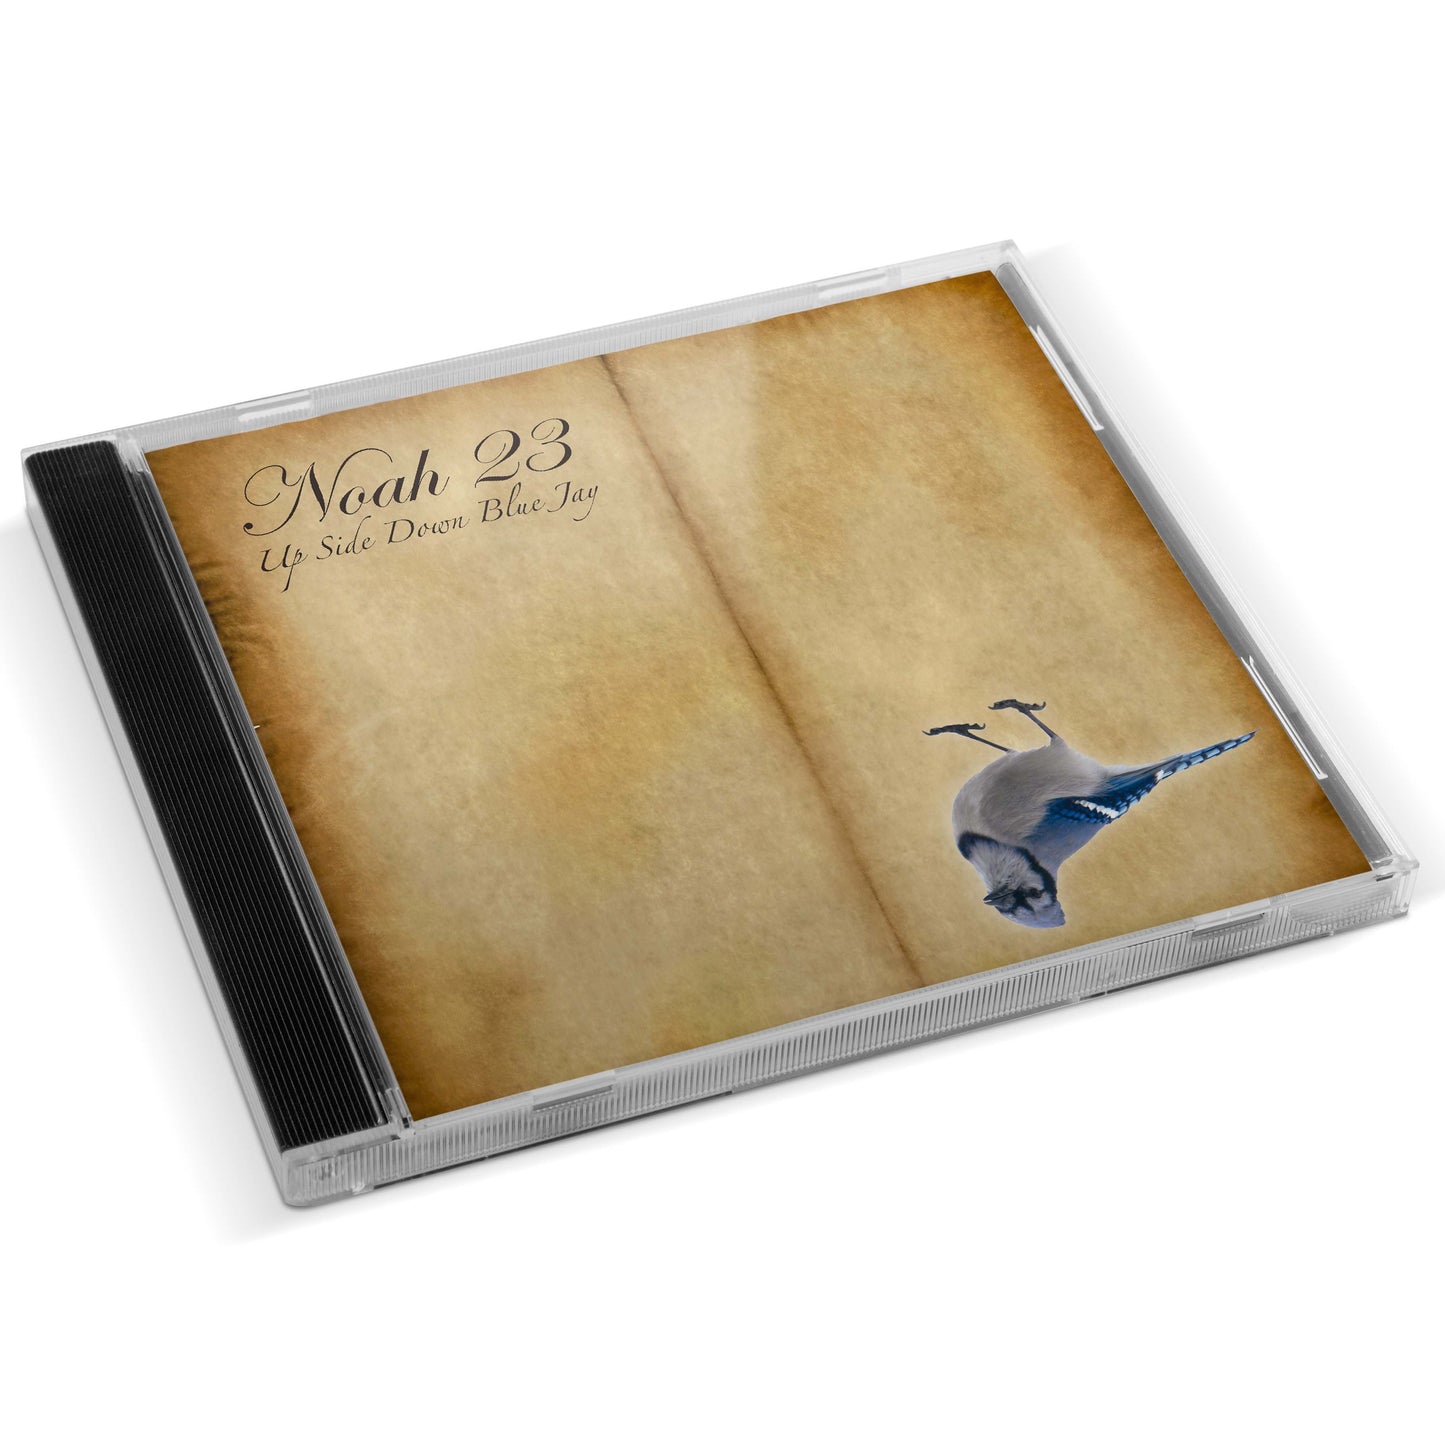 Noah23 - Upside Down Blue Jay CD